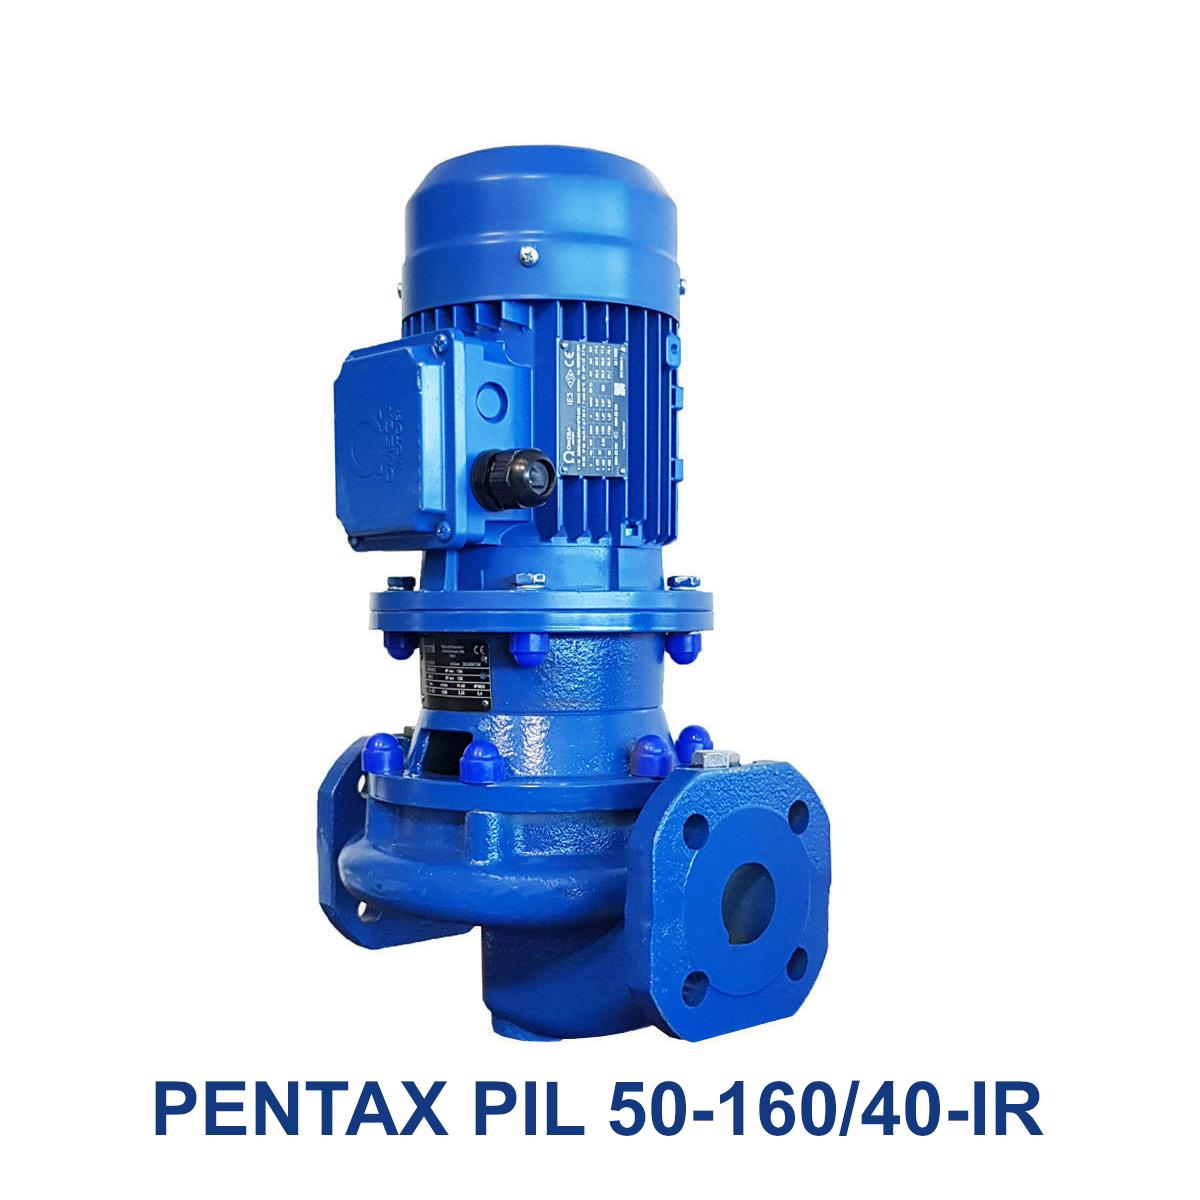 PENTAX-PIL-50-160-40-IR